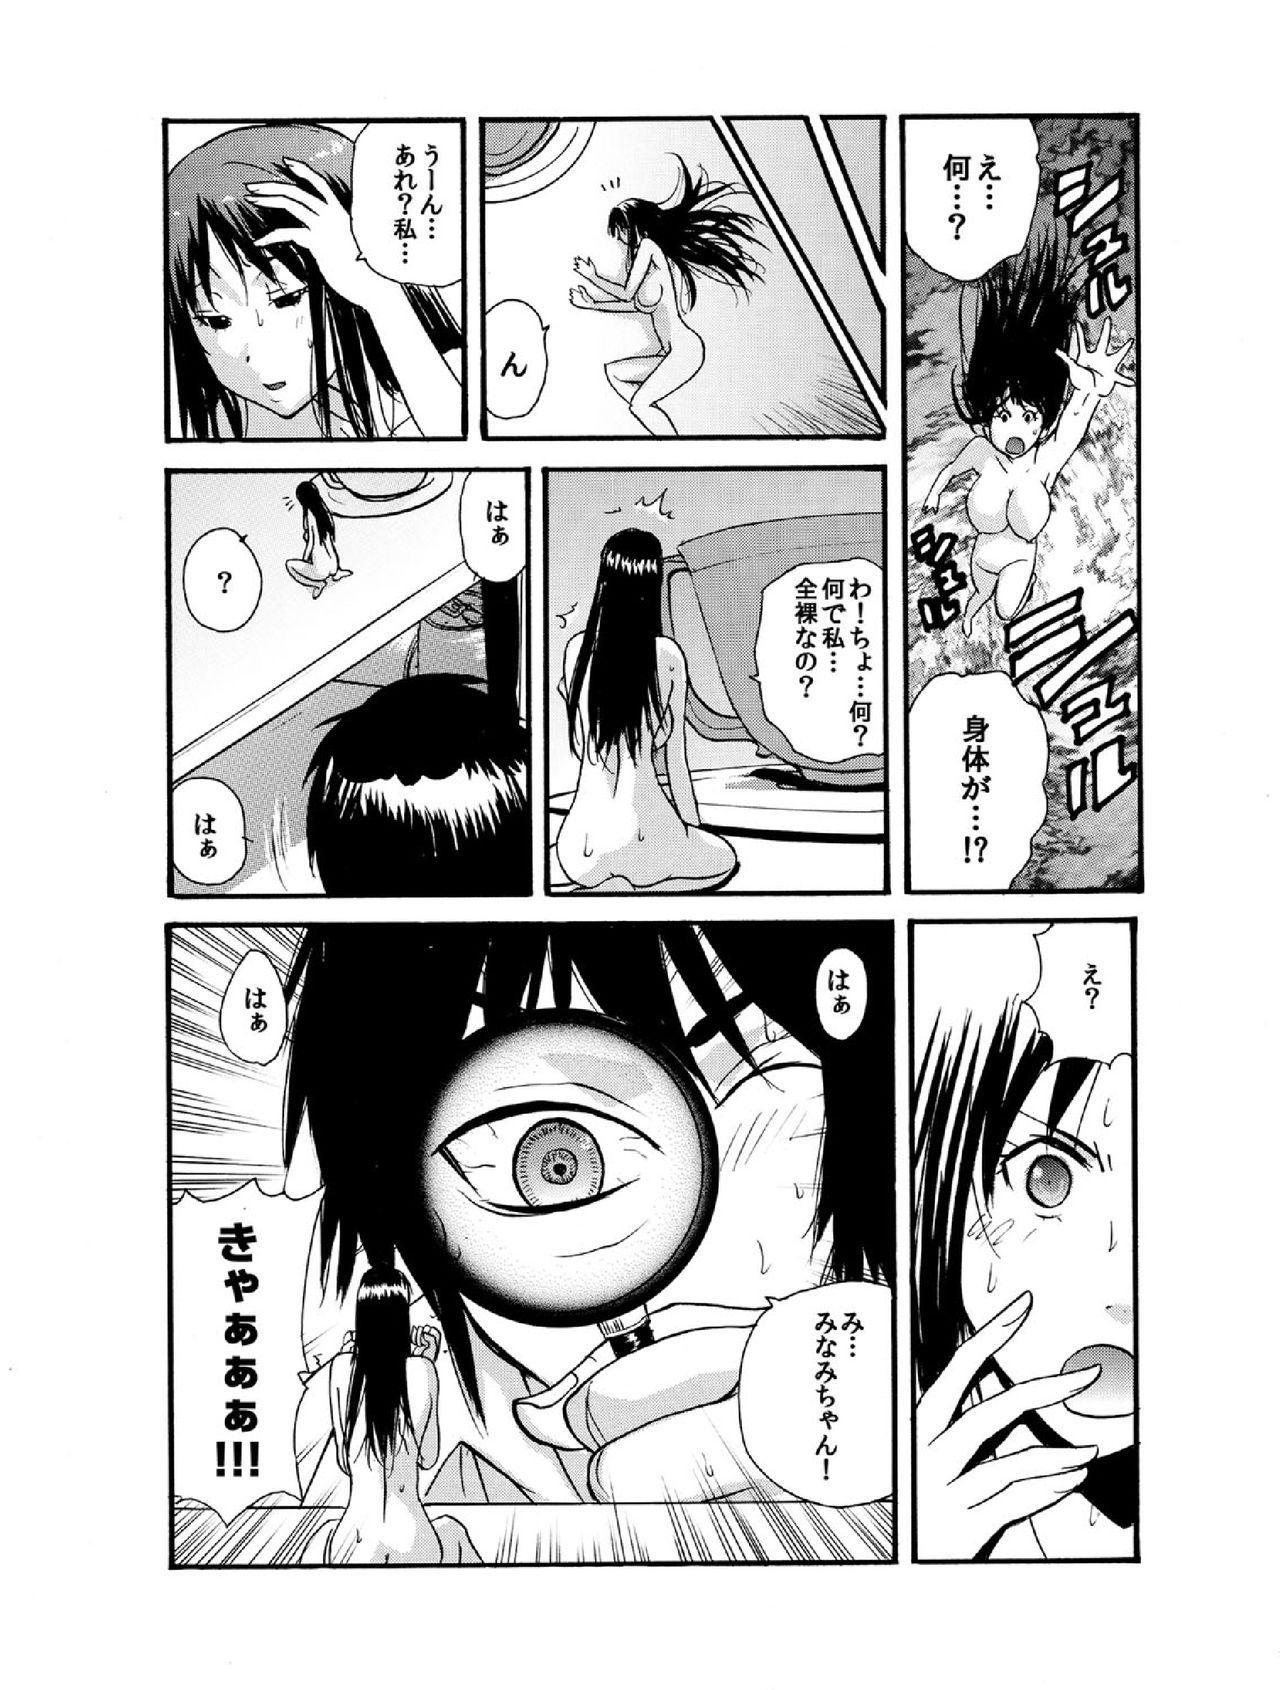 Mature Woman Small Kanojo Short Hair - Page 11